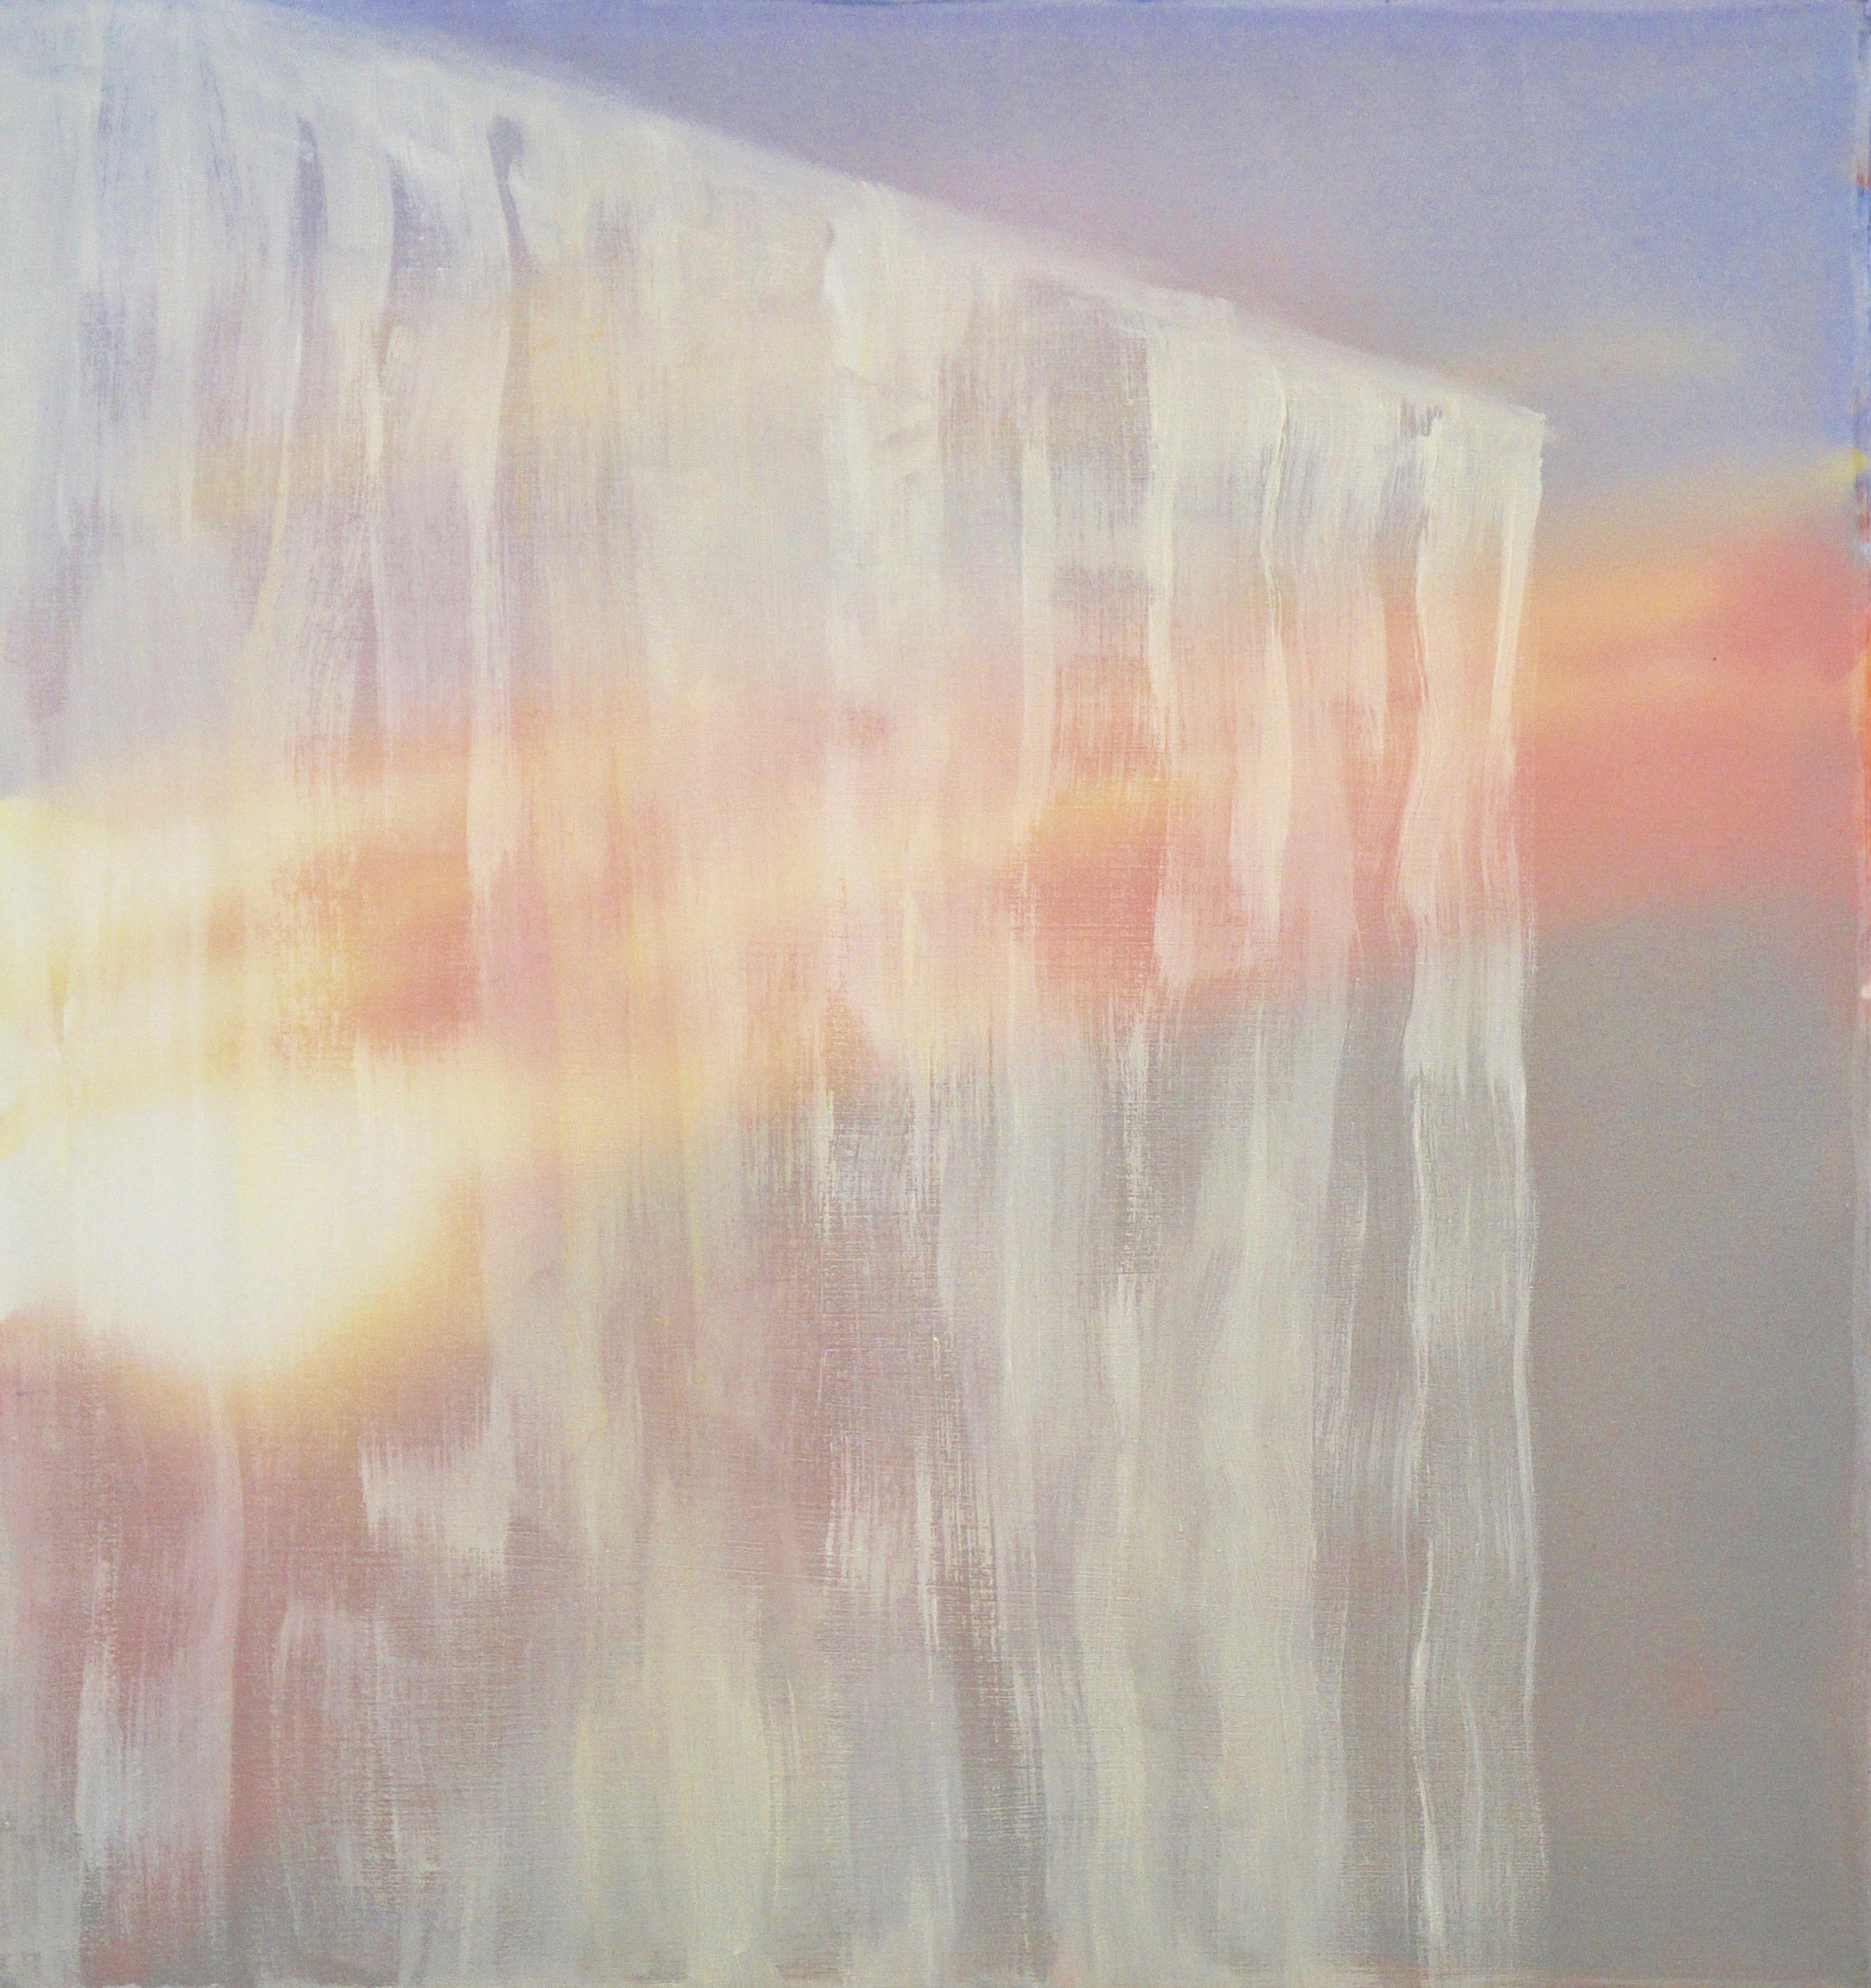 WINDOW IV - Peinture abstraite contemporaine en techniques mixtes, lumière et ombre, icicle